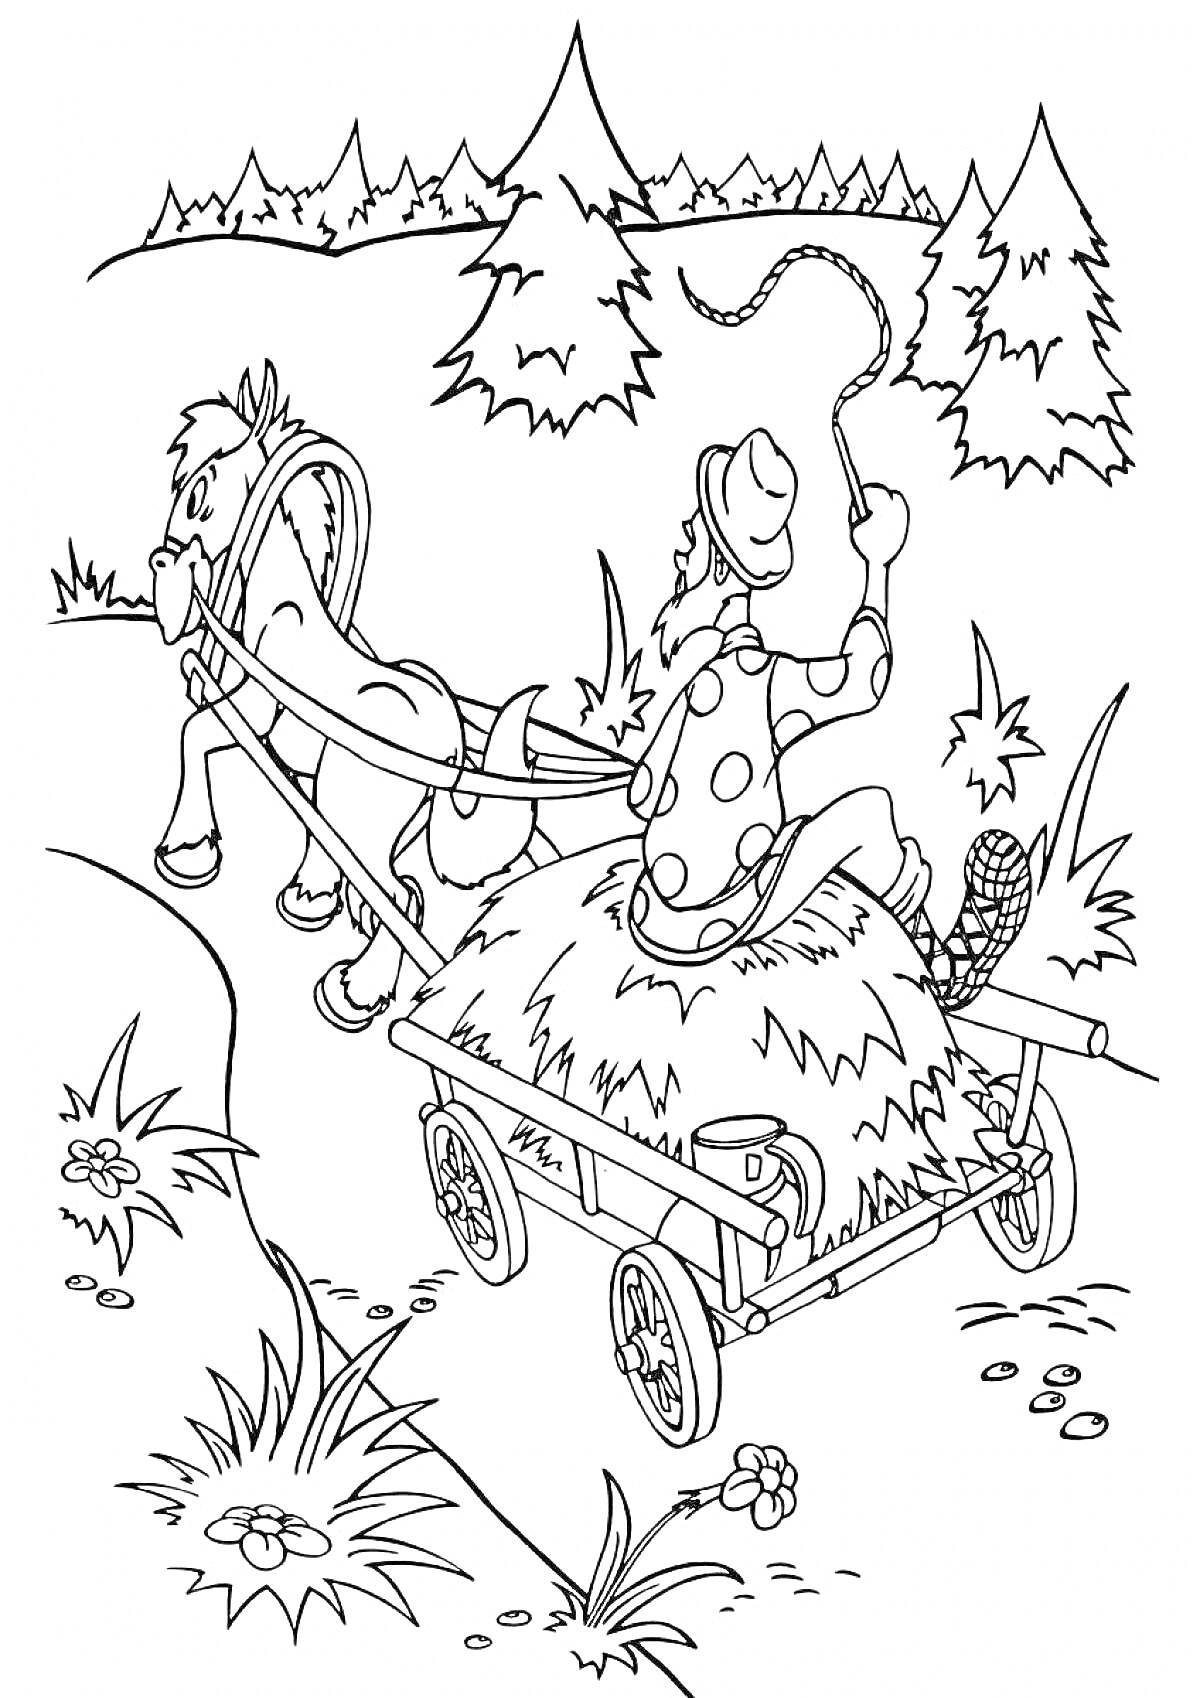 Мужчина с кнутом едет на телеге с сеном, запряженной лошадью, в лесу